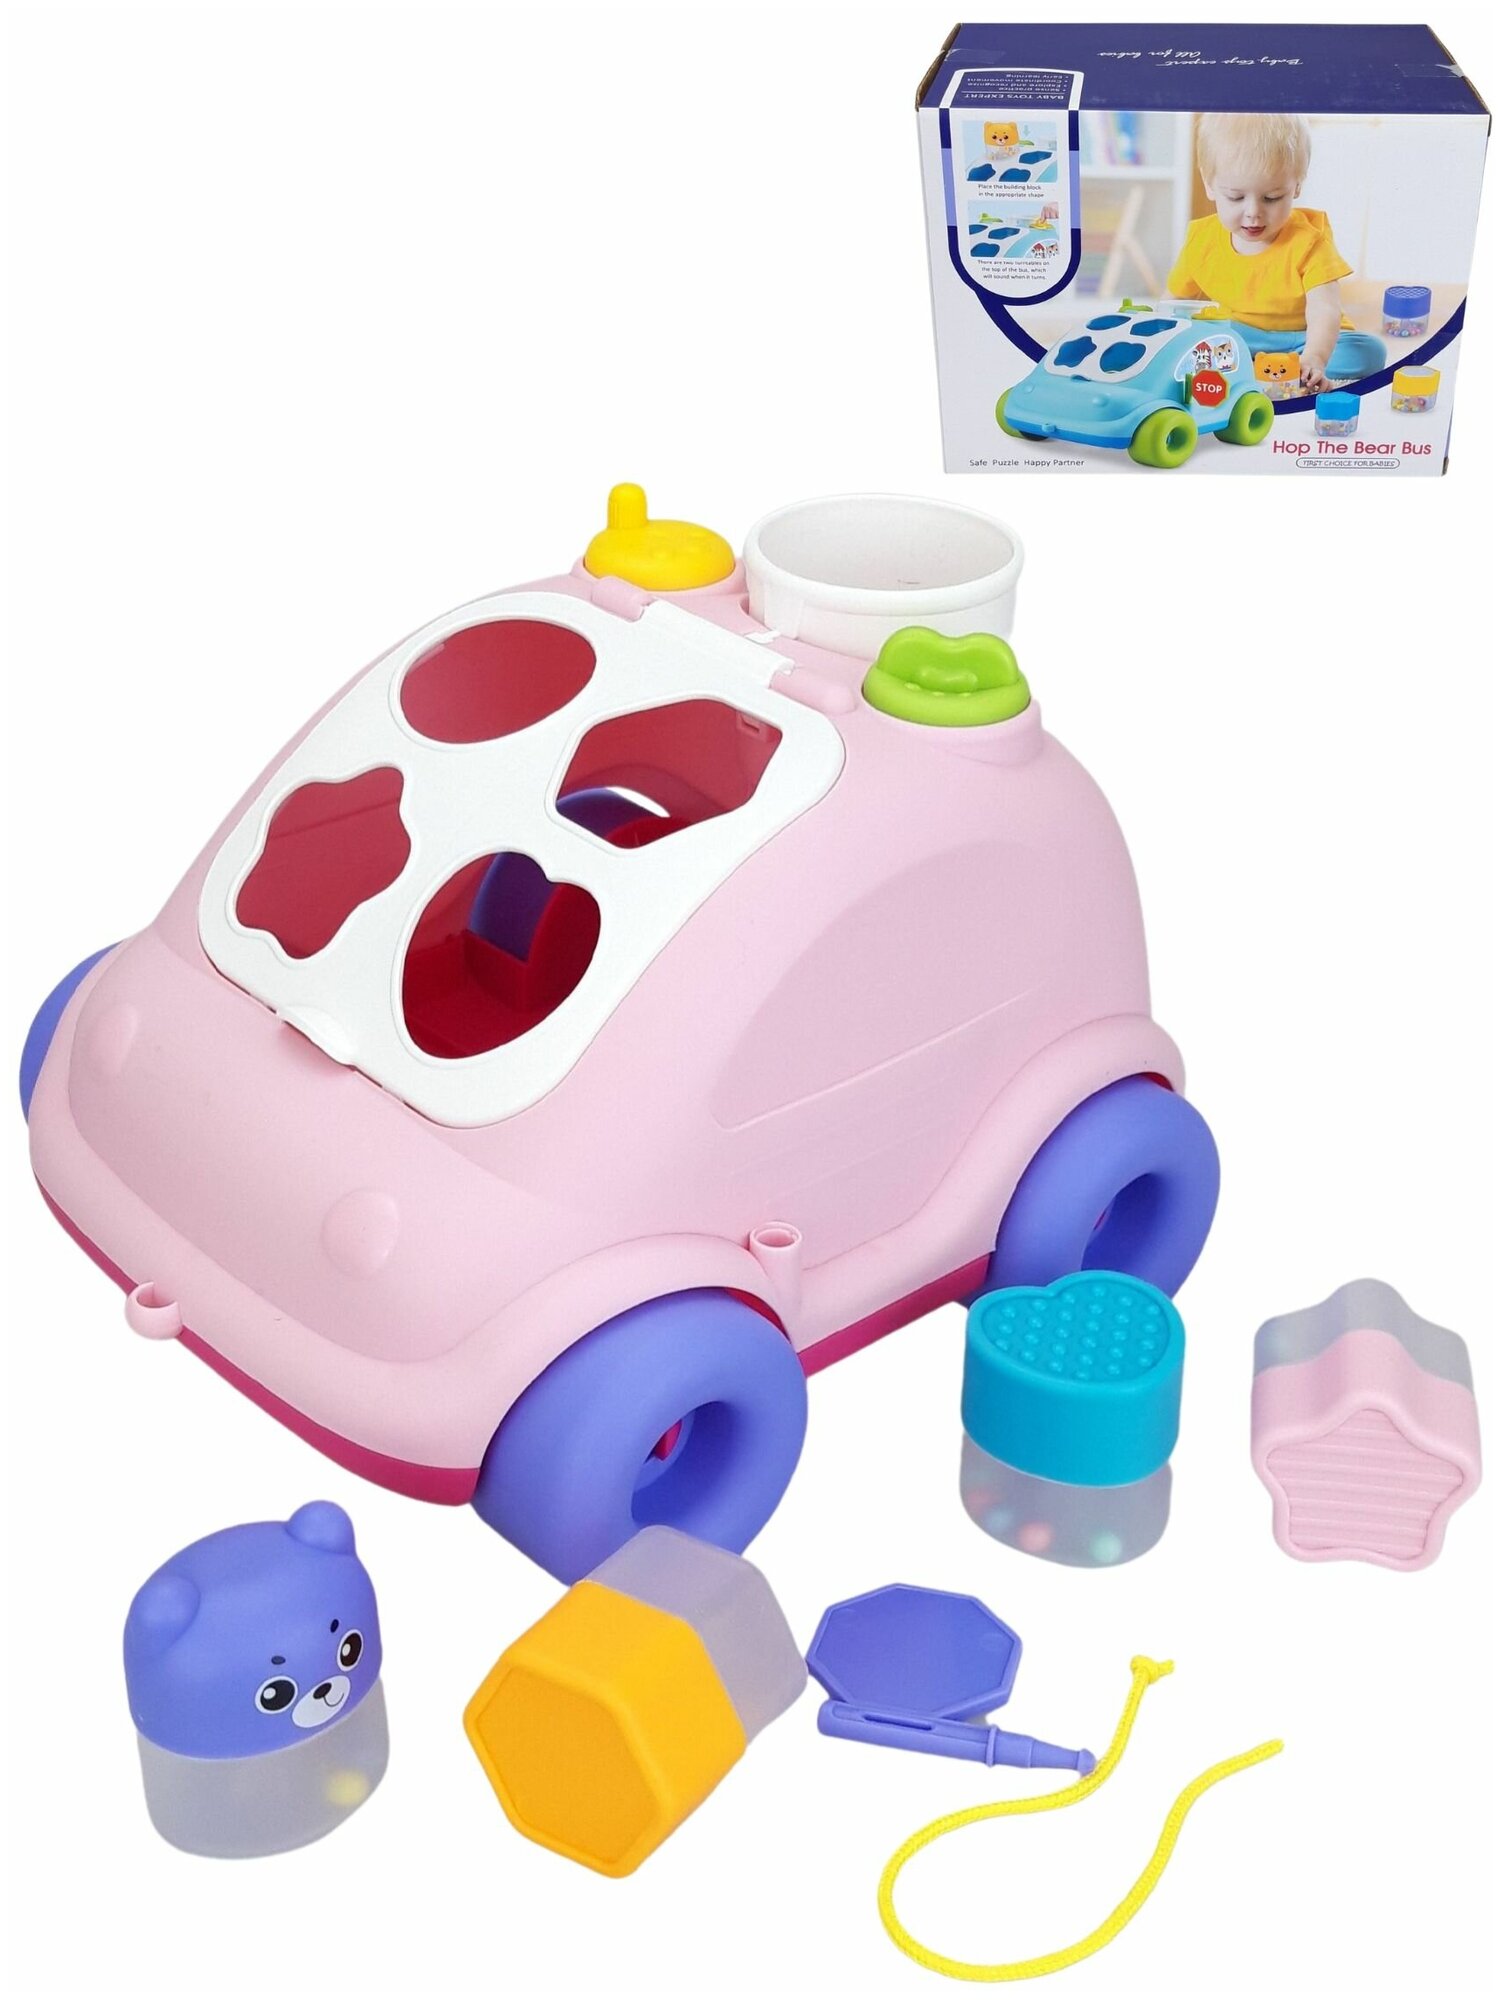 Сортер для малышей Машинка розовая развивающая игрушка от 1 года каталка с веревочкой